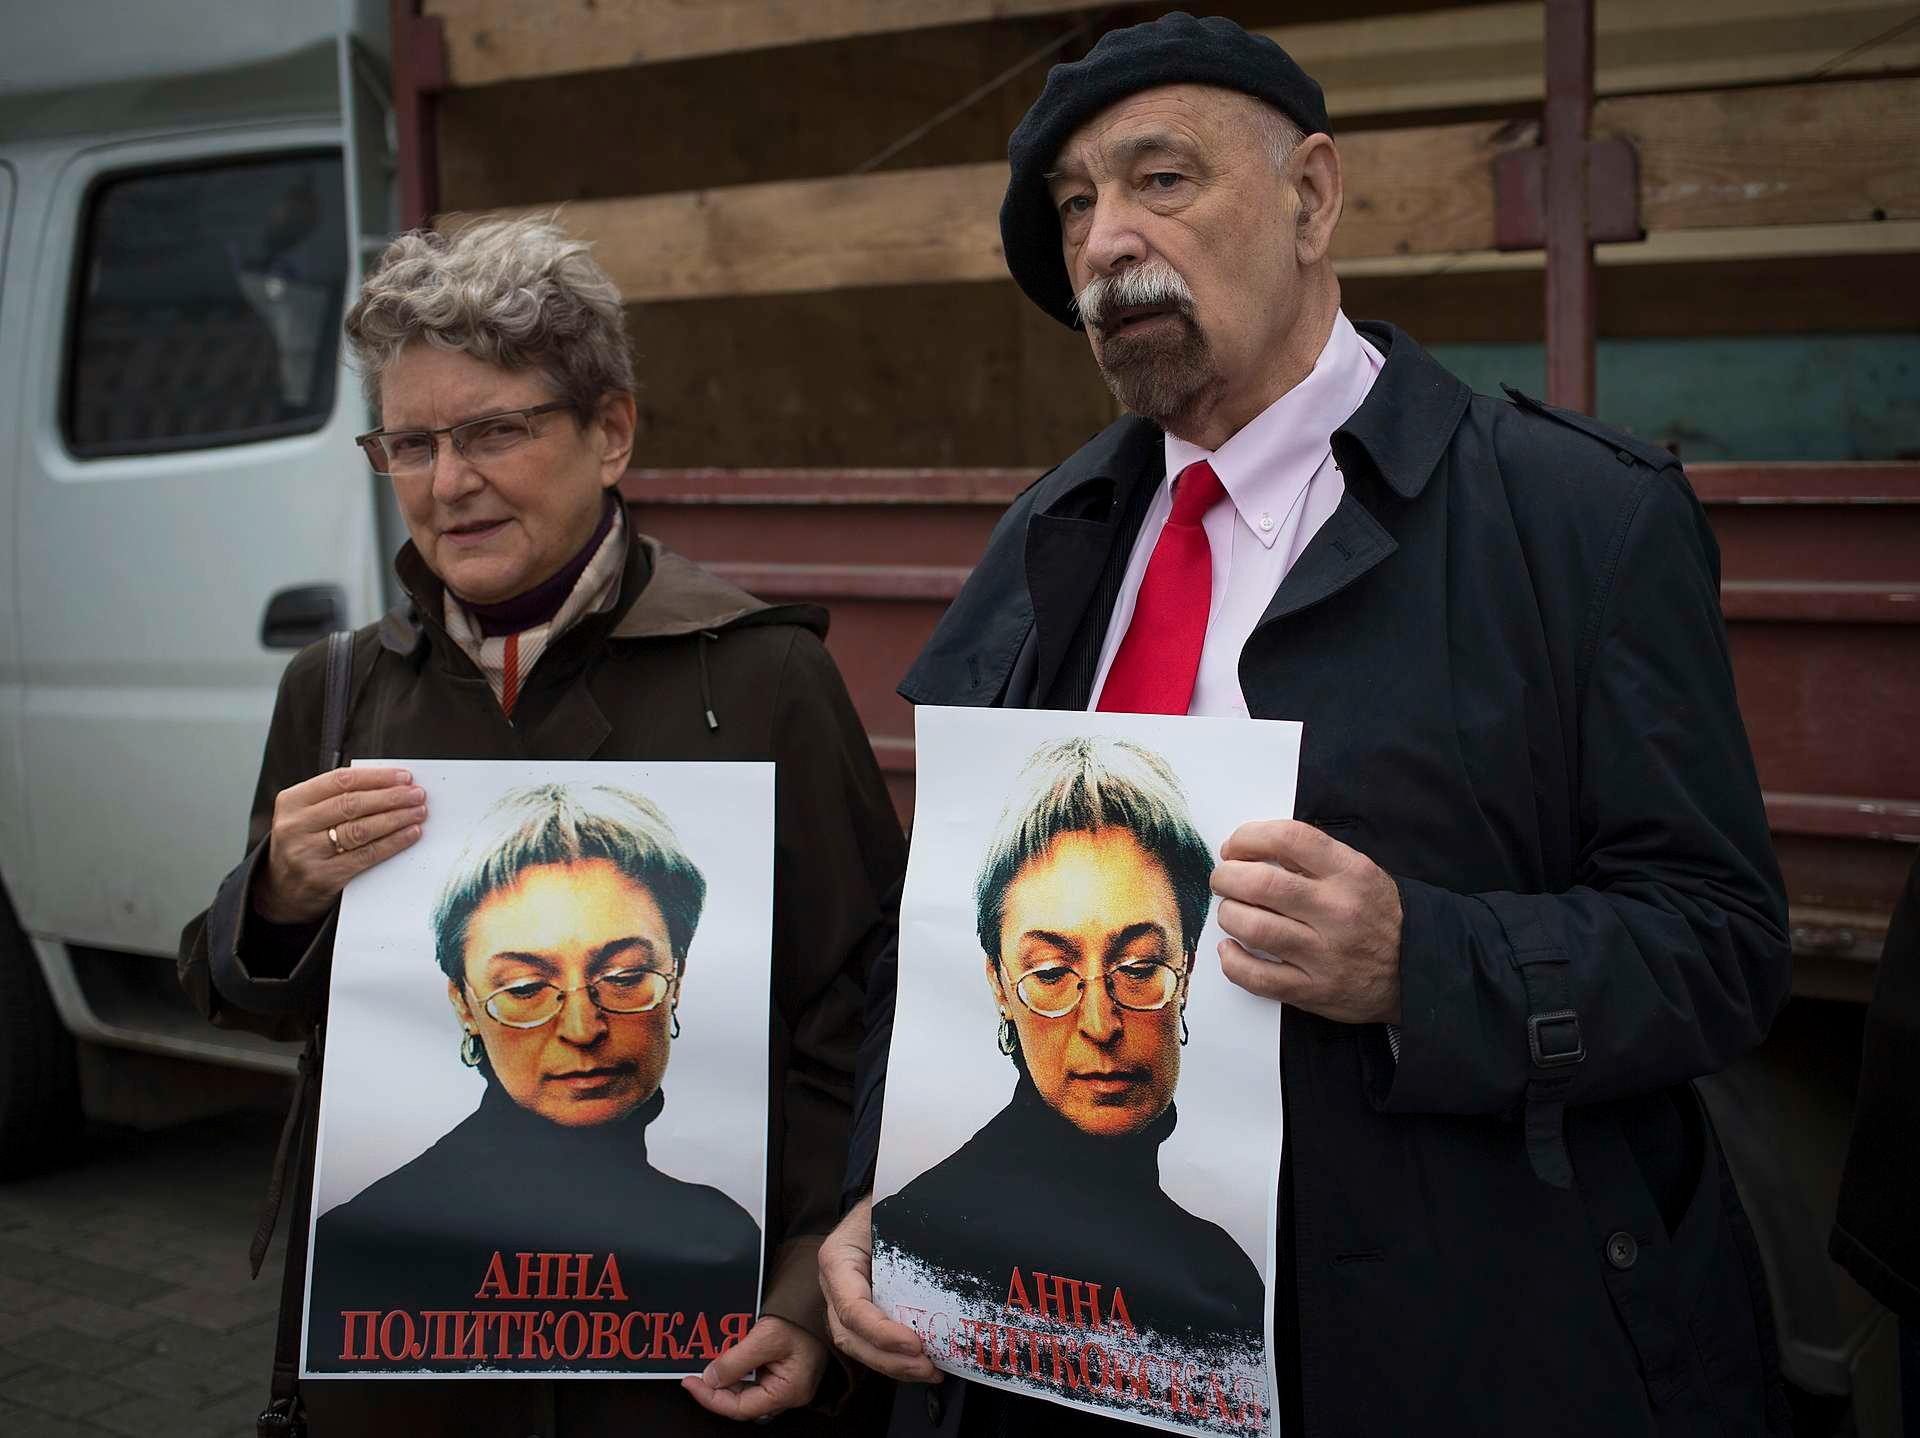 Svetlana Gannusjkina var matematiker før hun engasjerte seg i menneskerettighetsarbeid. Her minnes hun drapet på journalisten Anna Politkovskaja under en markering i oktober 2012.